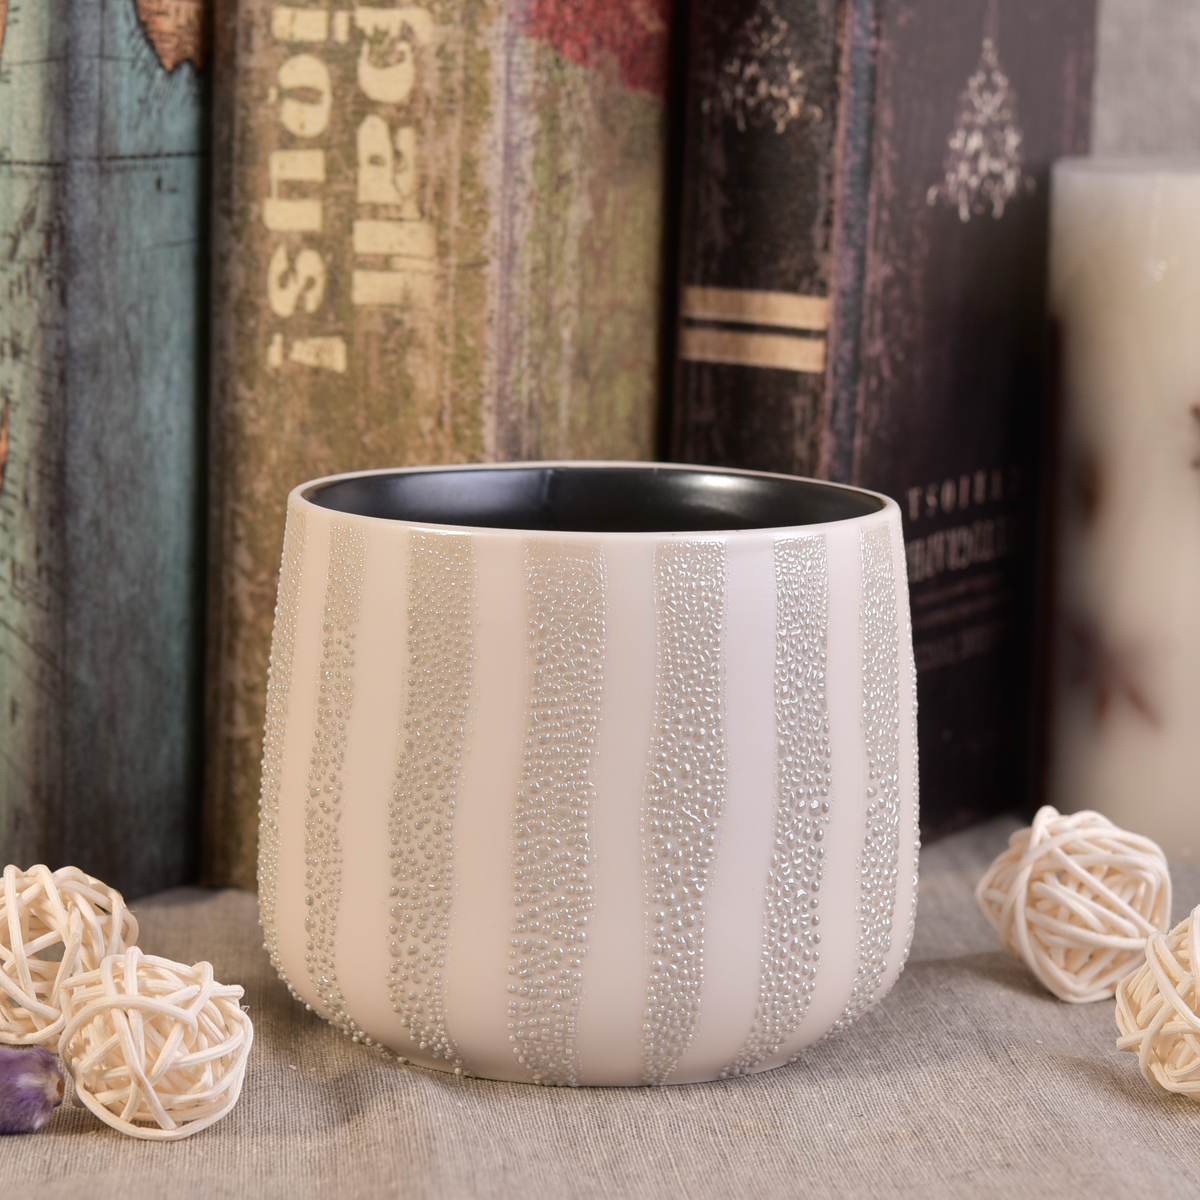 Neues Design mit Pearl Glaze Keramik Candle Container